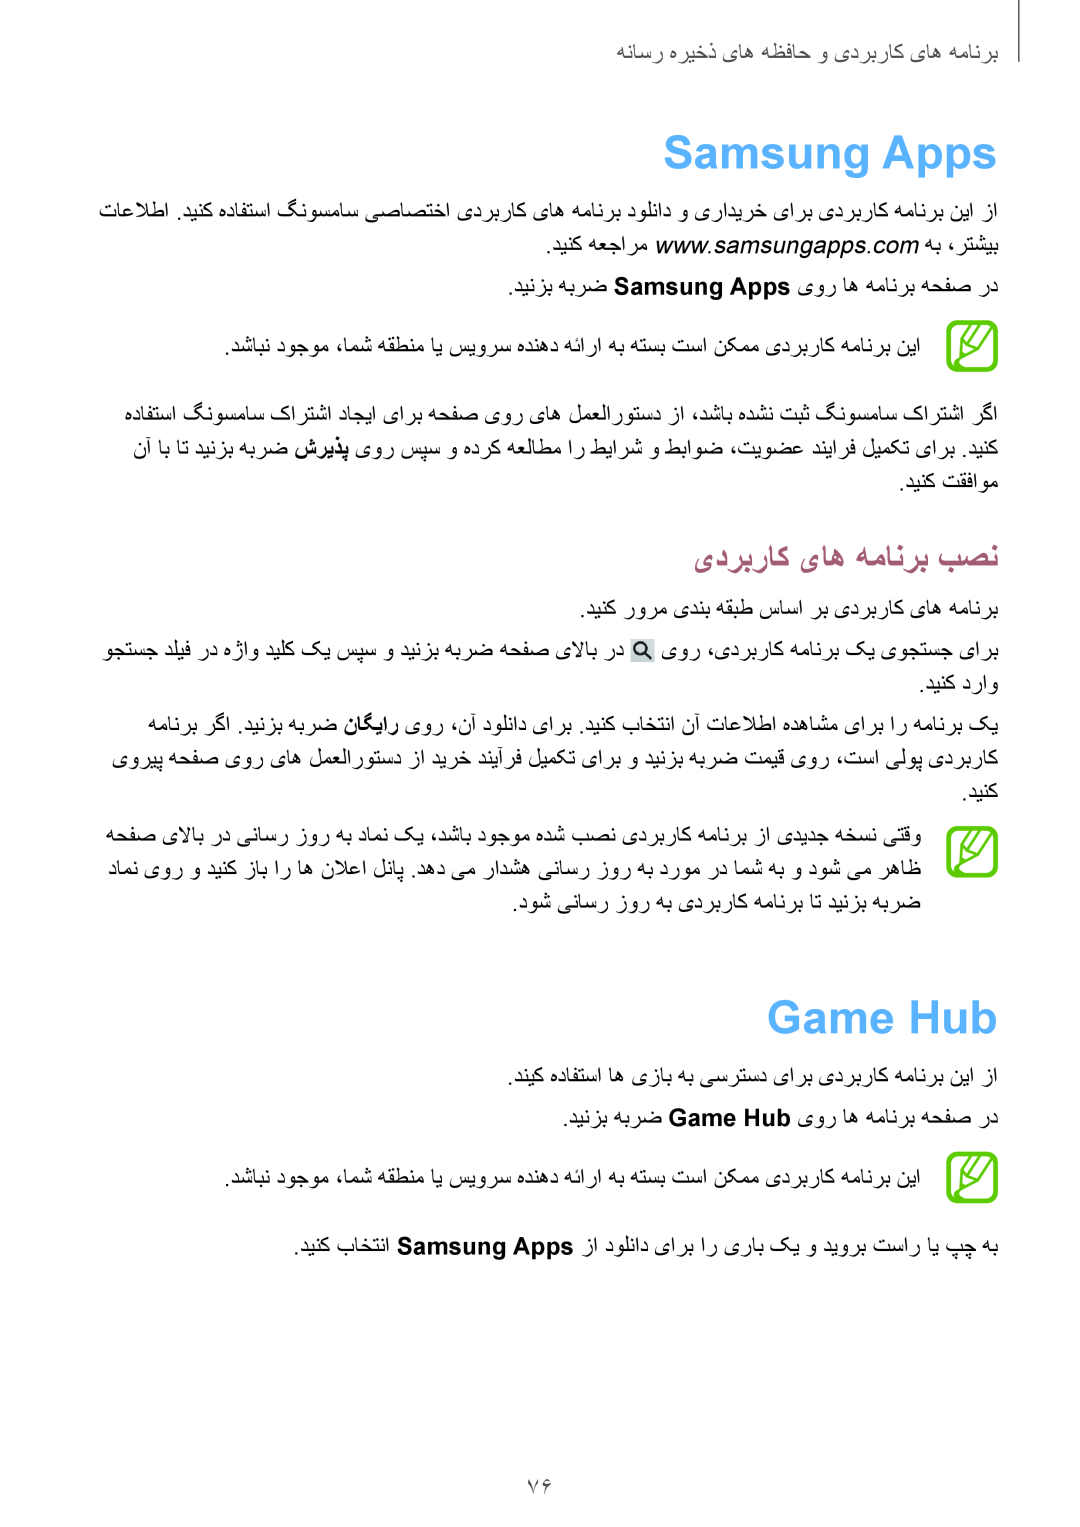 Samsung GT-S7272UWATHR manual Samsung Apps, Game Hub, برنامه های کاربردی و حافظه های ذخیره رسانه, یدربراک یاه همانرب بصن 